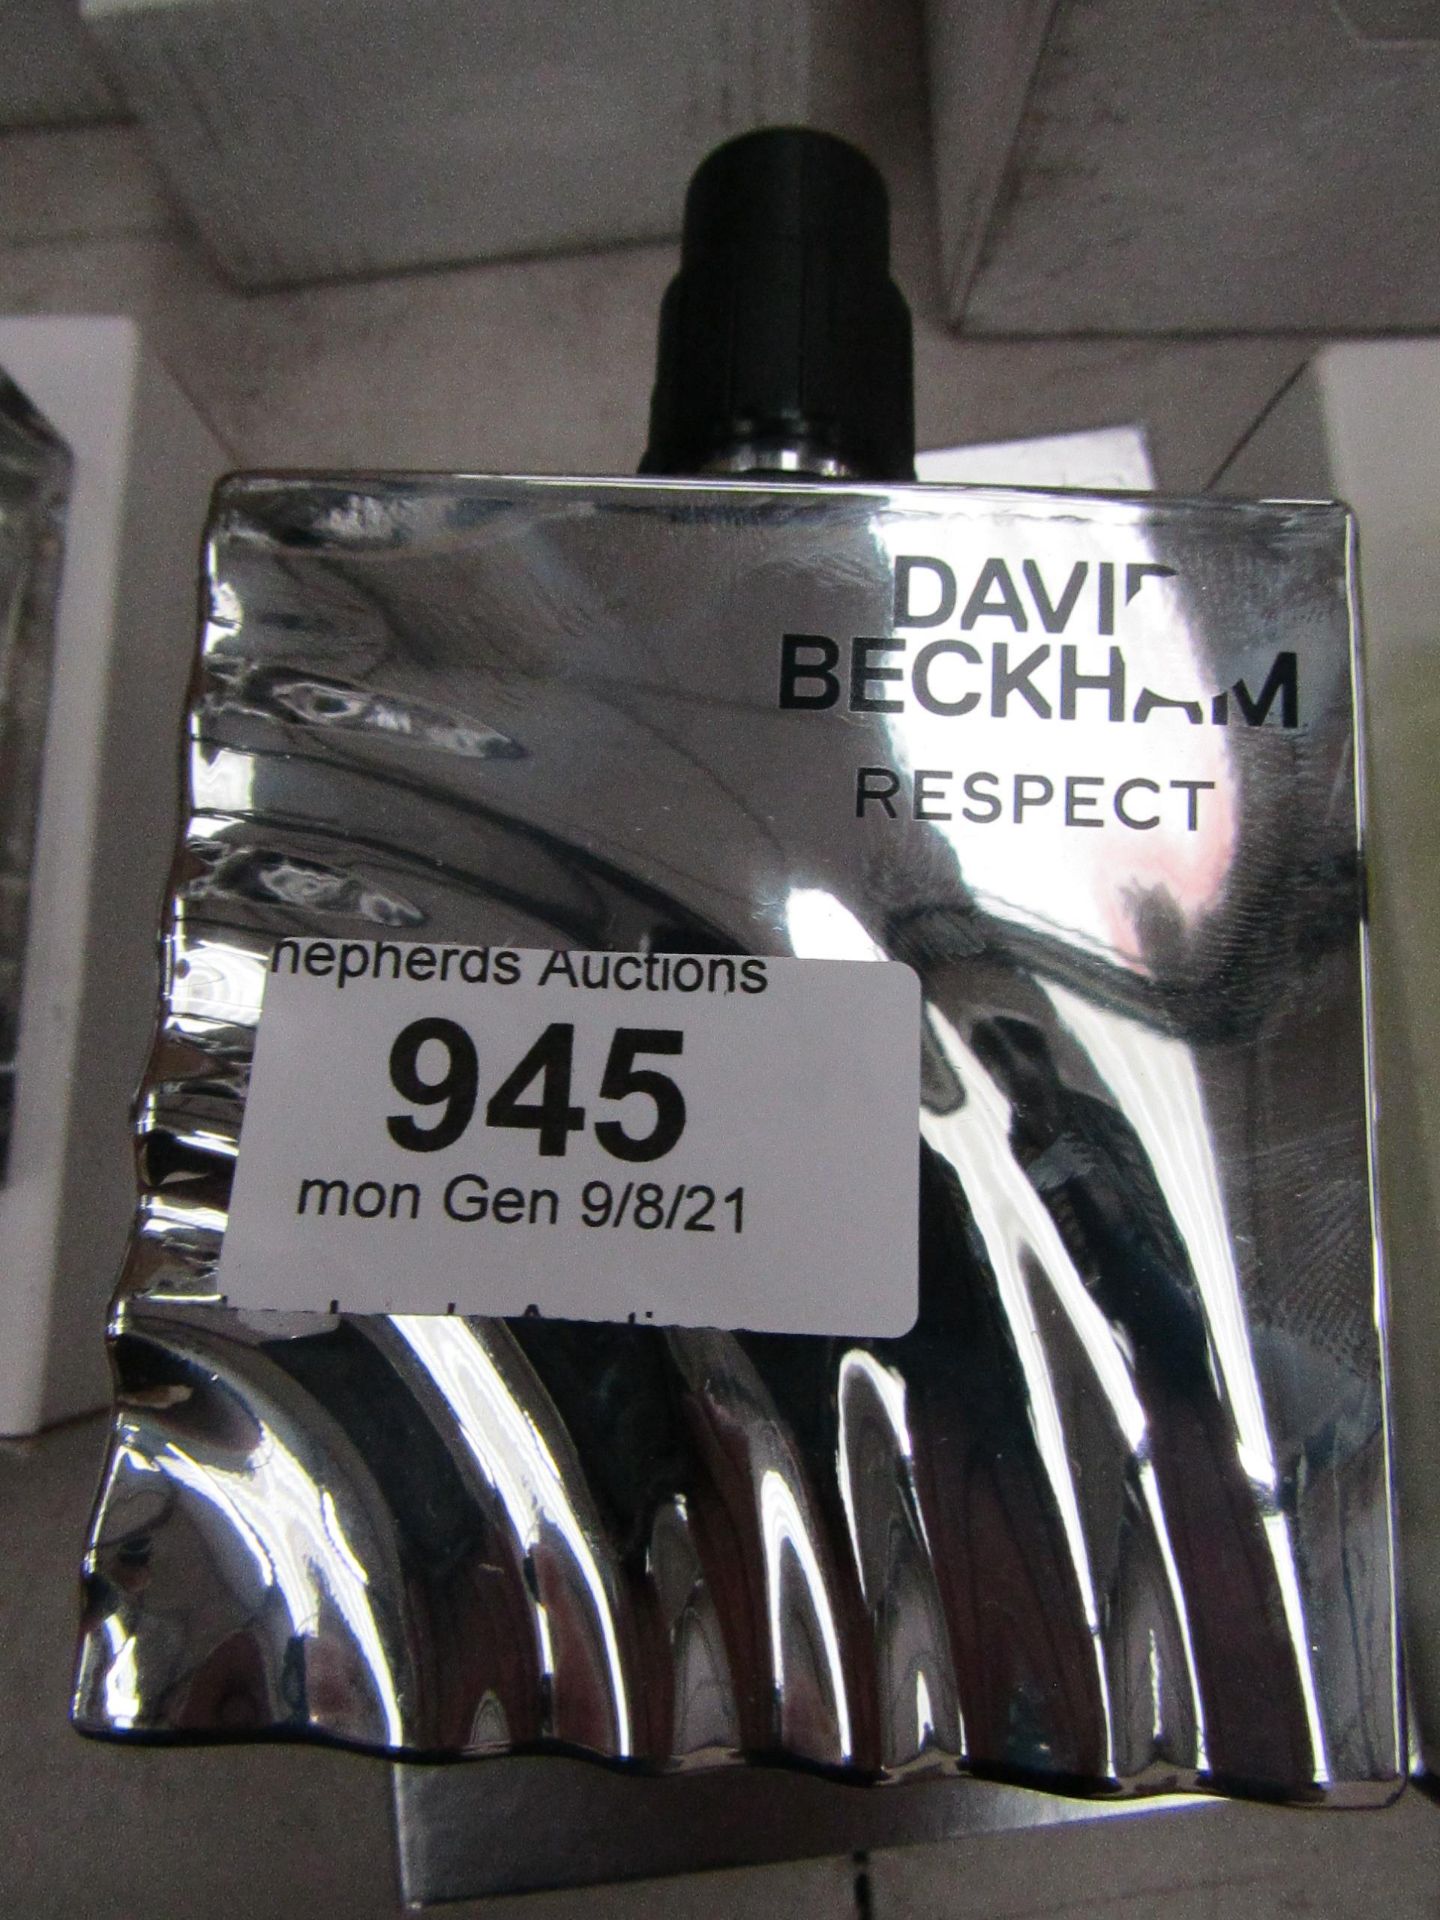 90ml Bottle of David Beckham Respect, Looks to be full